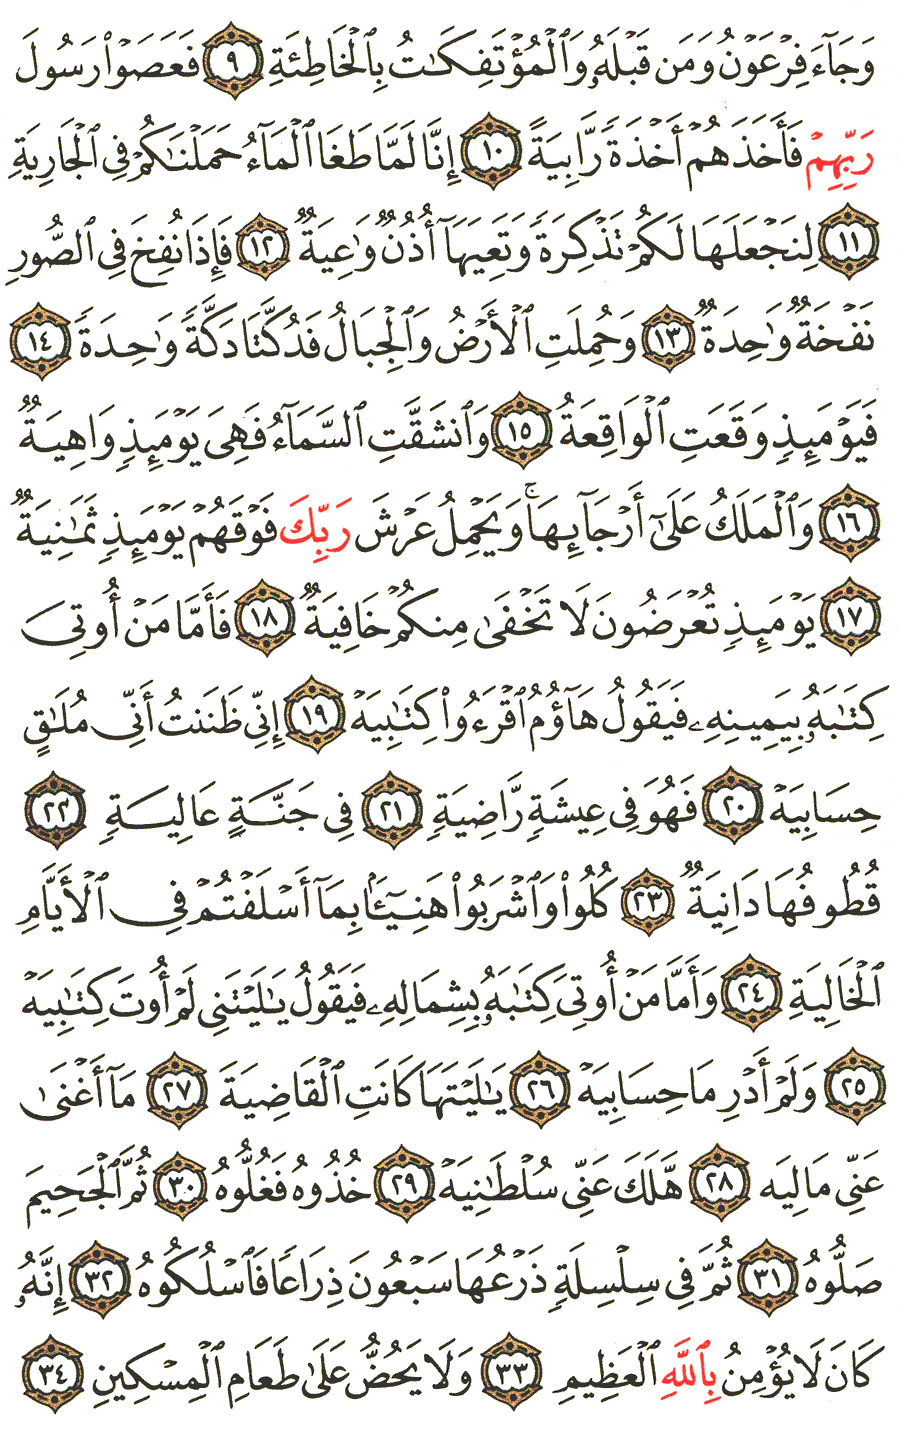 الصفحة 567 من القرآن الكريم